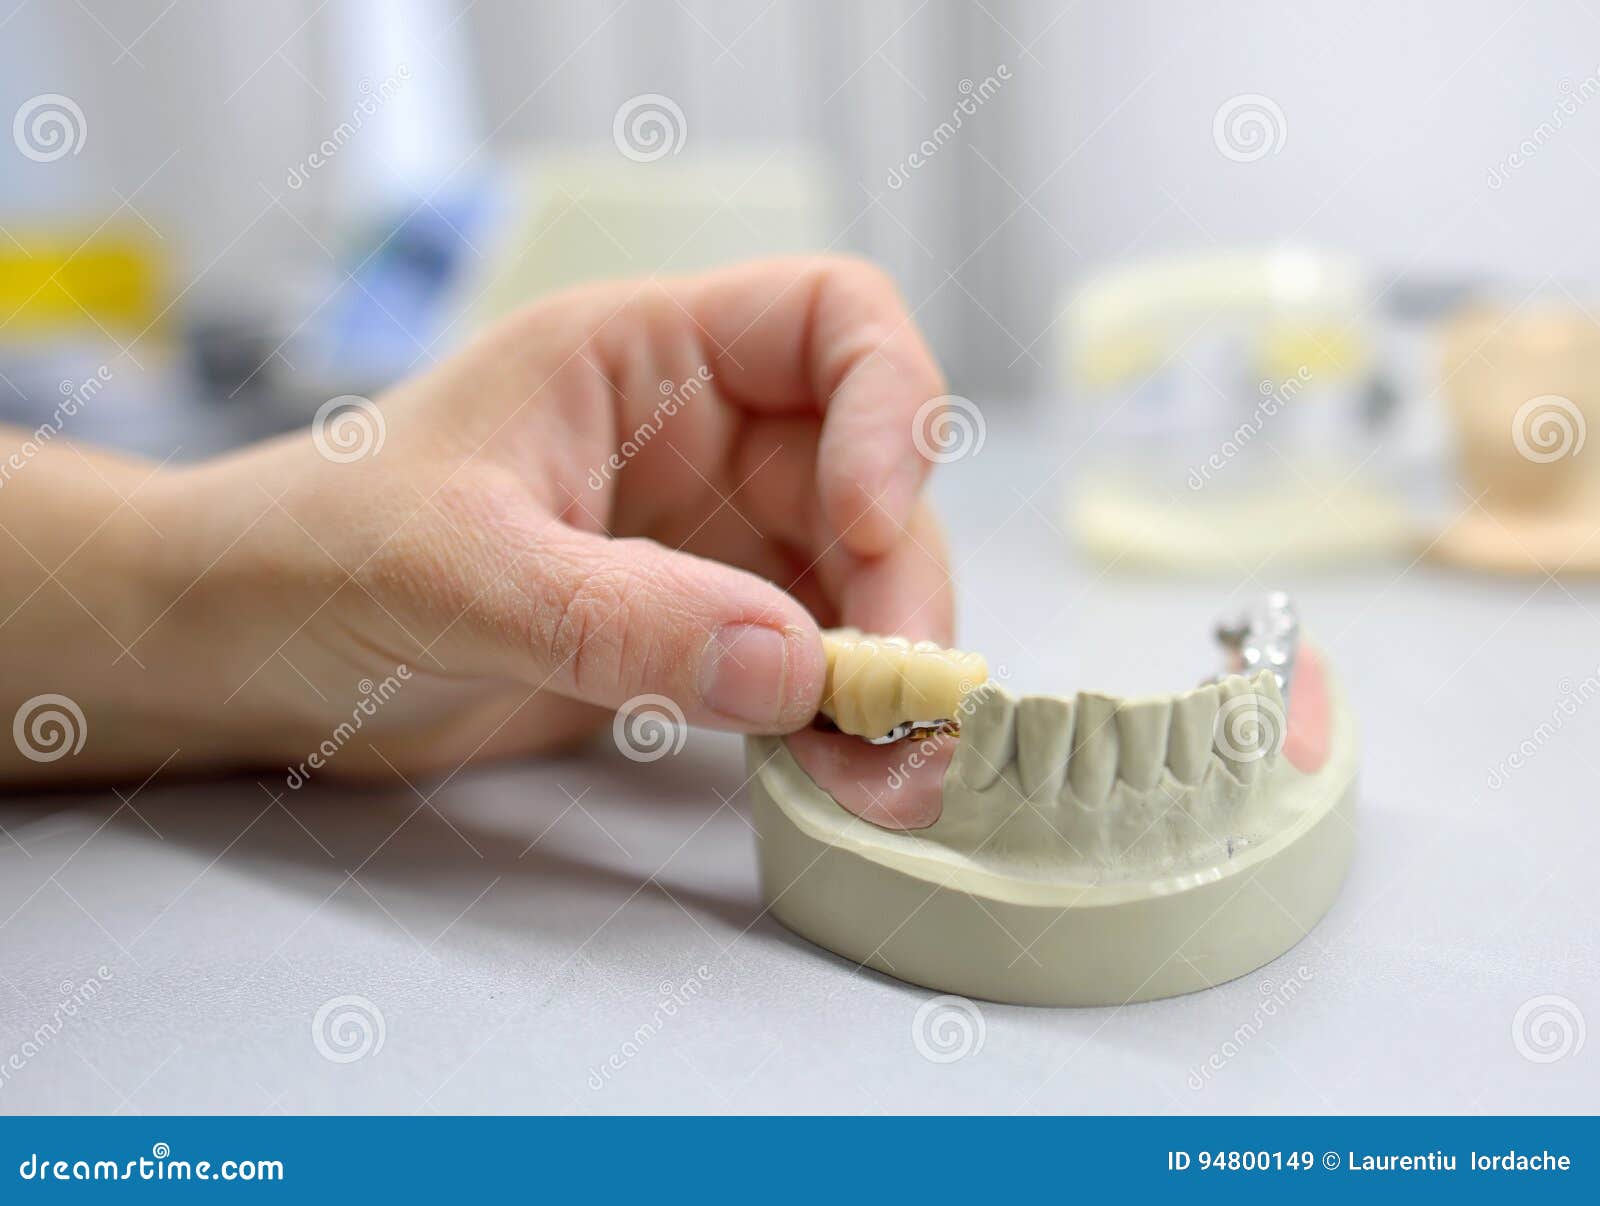 dental technician working